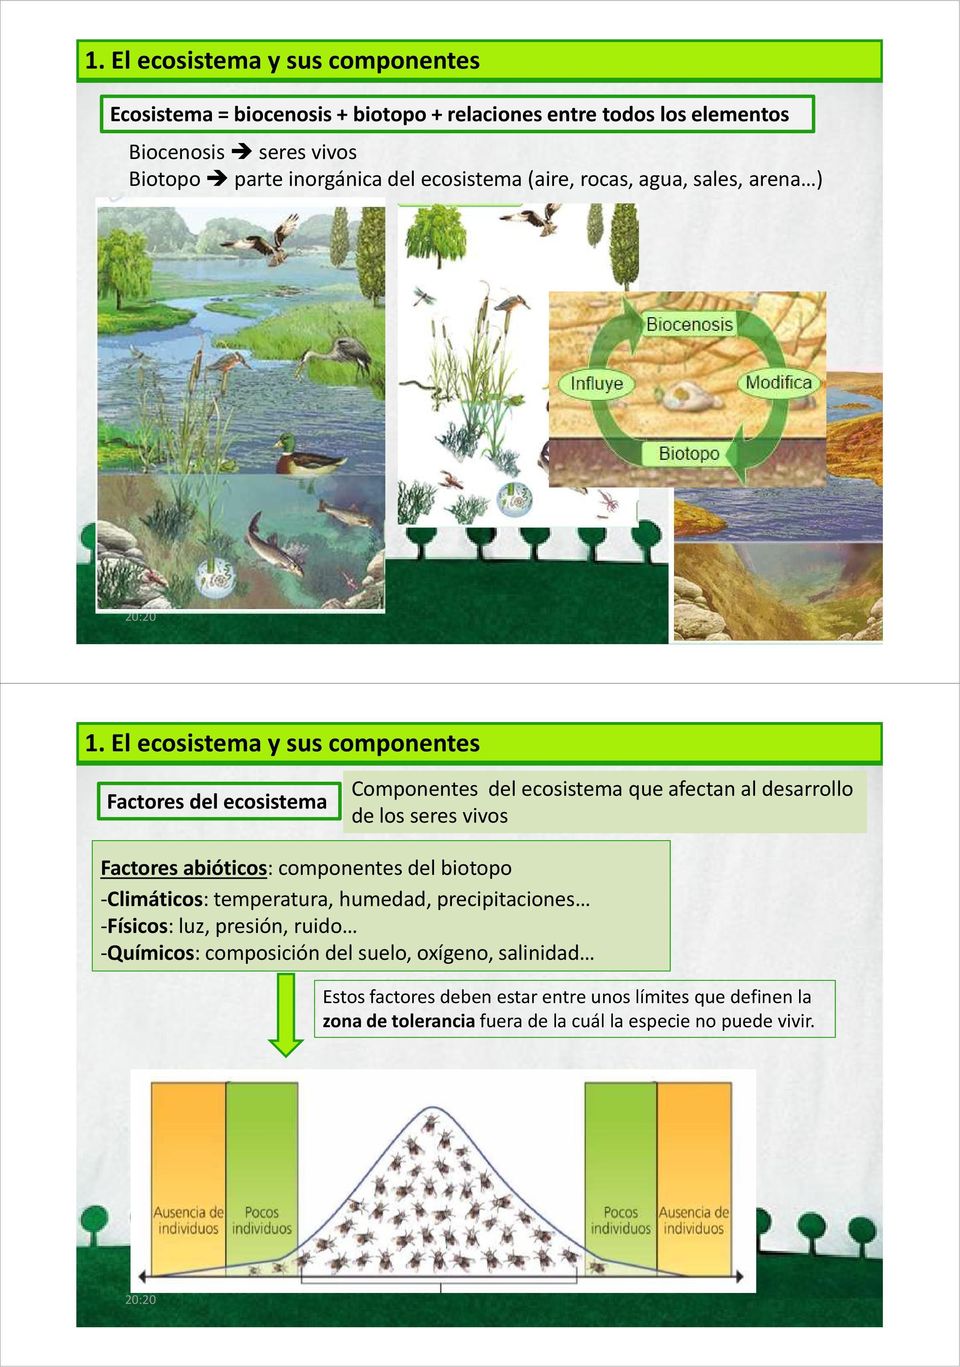 El ecosistema y sus componentes Factores del ecosistema Componentes del ecosistema que afectan al desarrollo de los seres vivos Factores abióticos: componentes